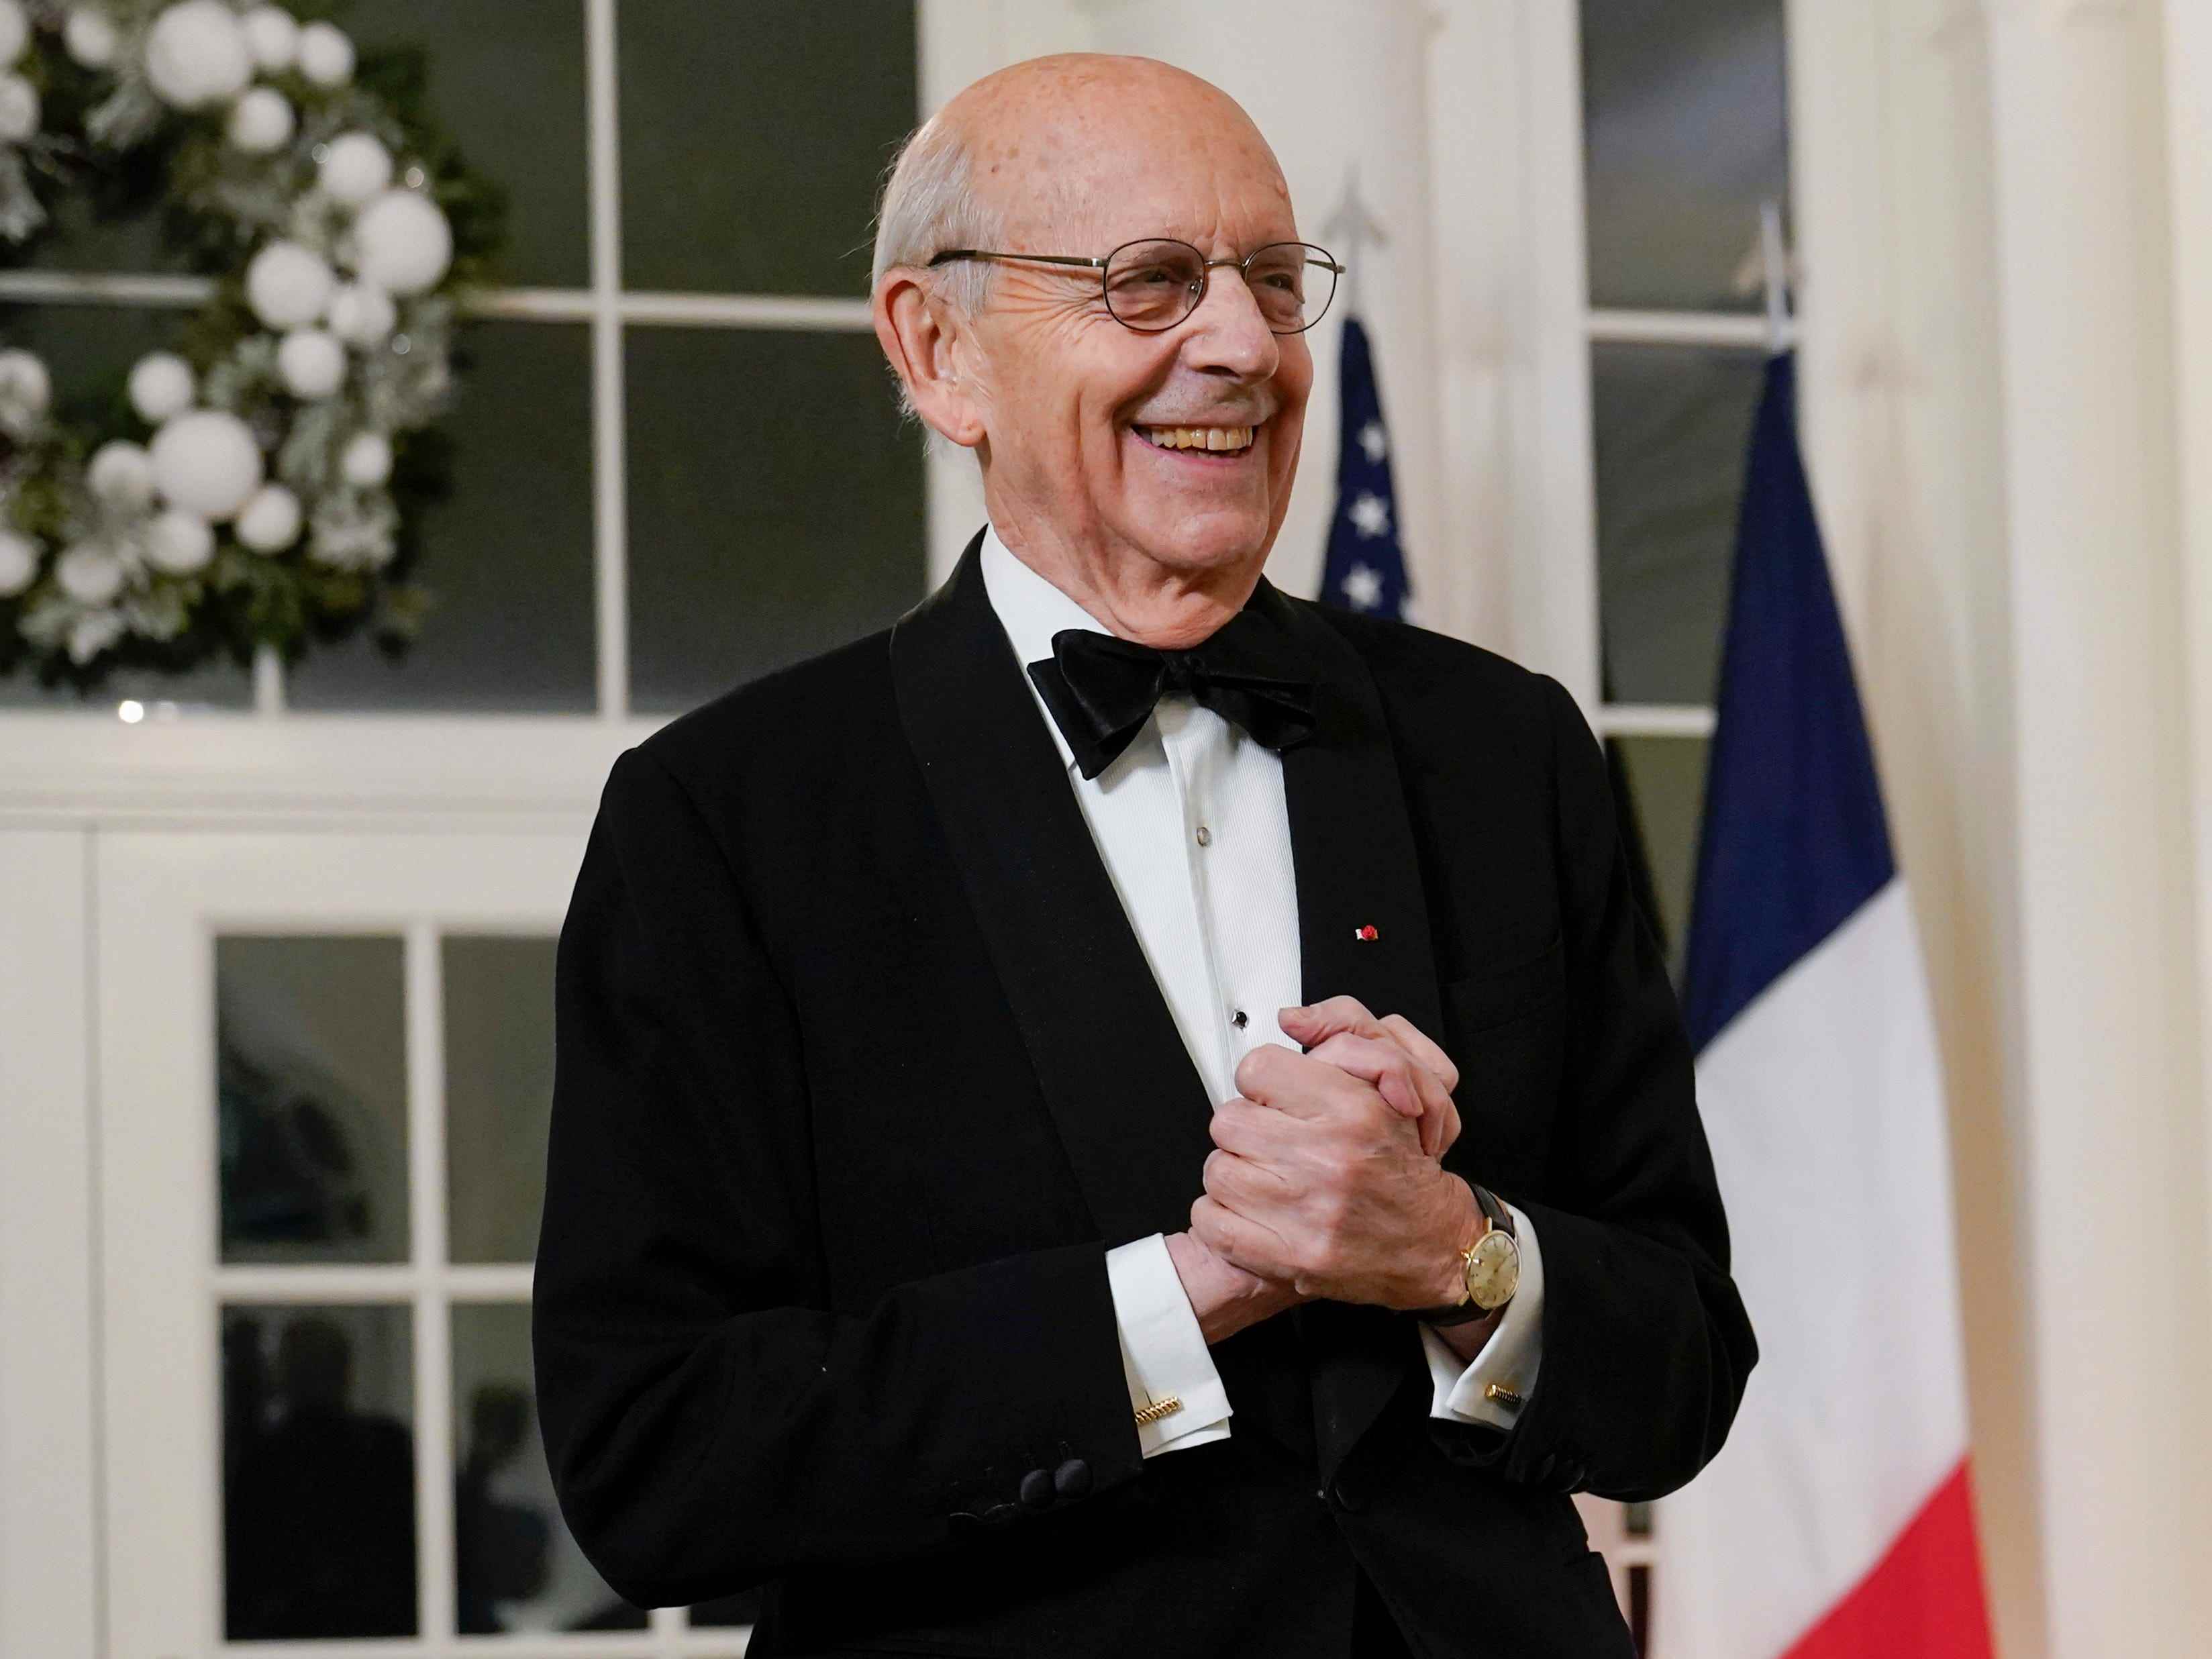 Stephen Breyer, stellvertretender Richter am Obersten Gerichtshof im Ruhestand, trifft am Donnerstag, den 1. Dezember 2022, zum Staatsdinner mit Präsident Joe Biden und dem französischen Präsidenten Emmanuel Macron im Weißen Haus in Washington ein.